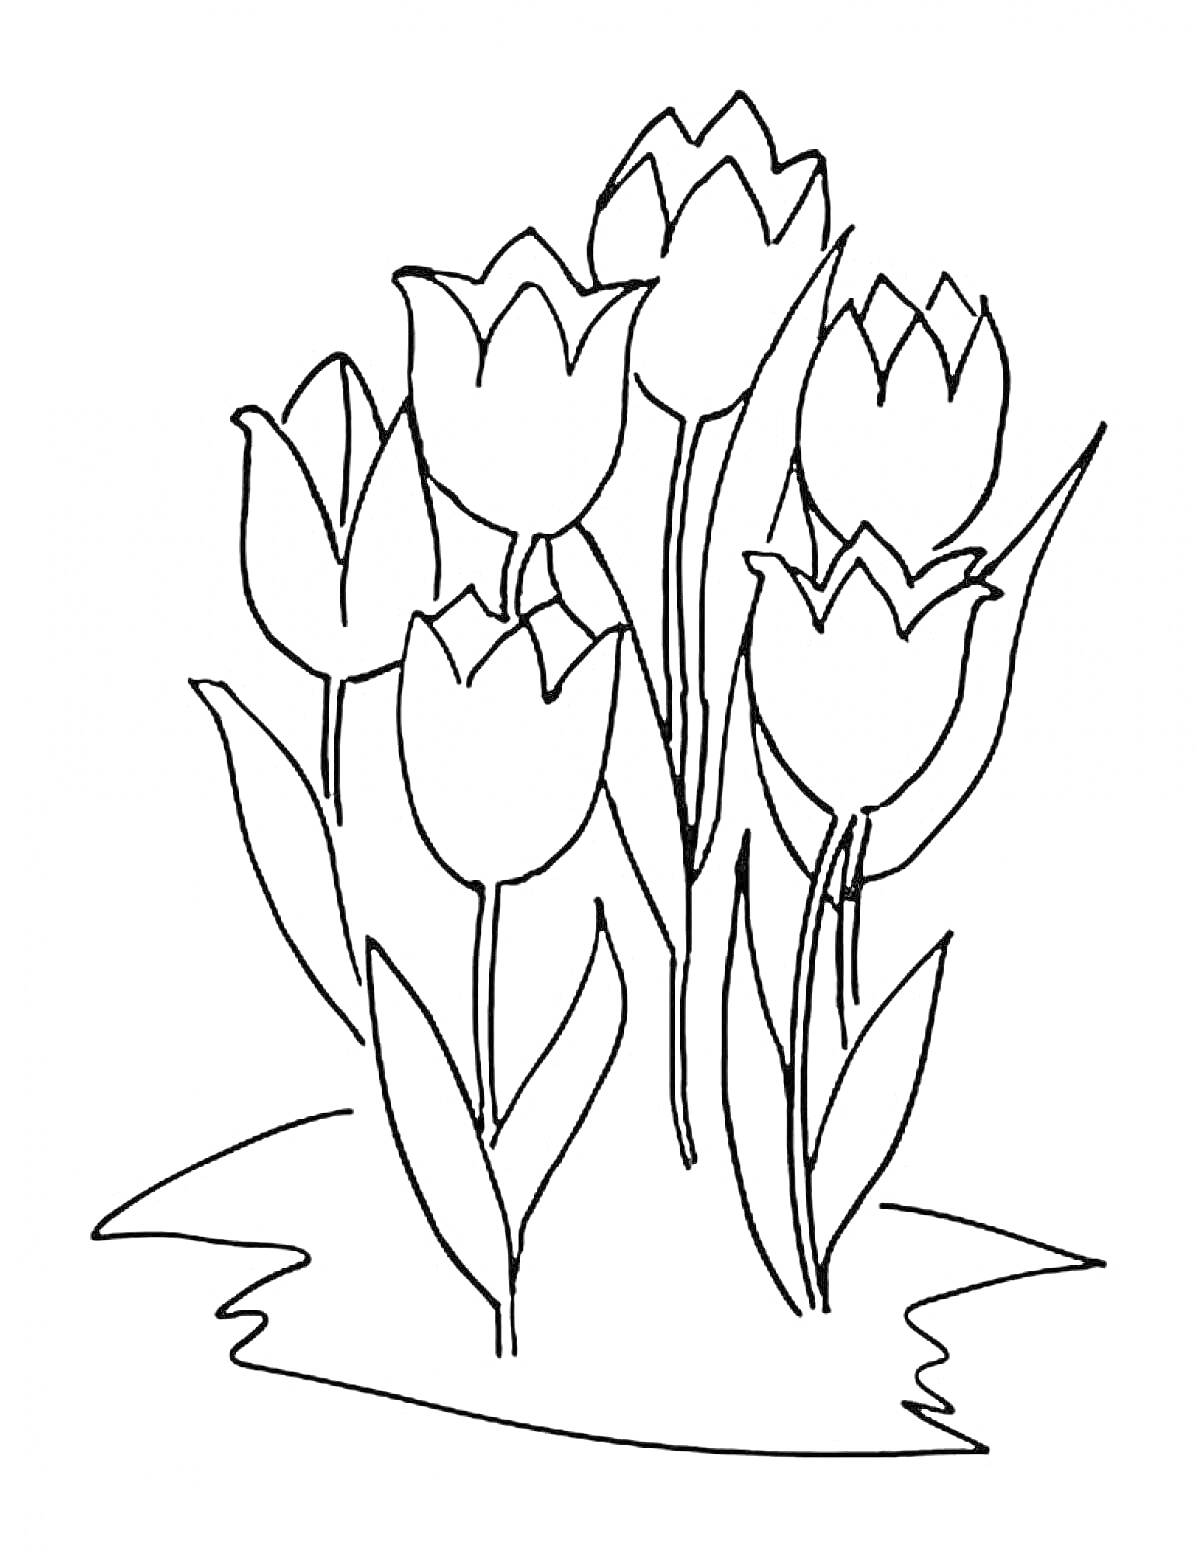 Раскраска Тюльпаны, шесть цветов с листьями на траве